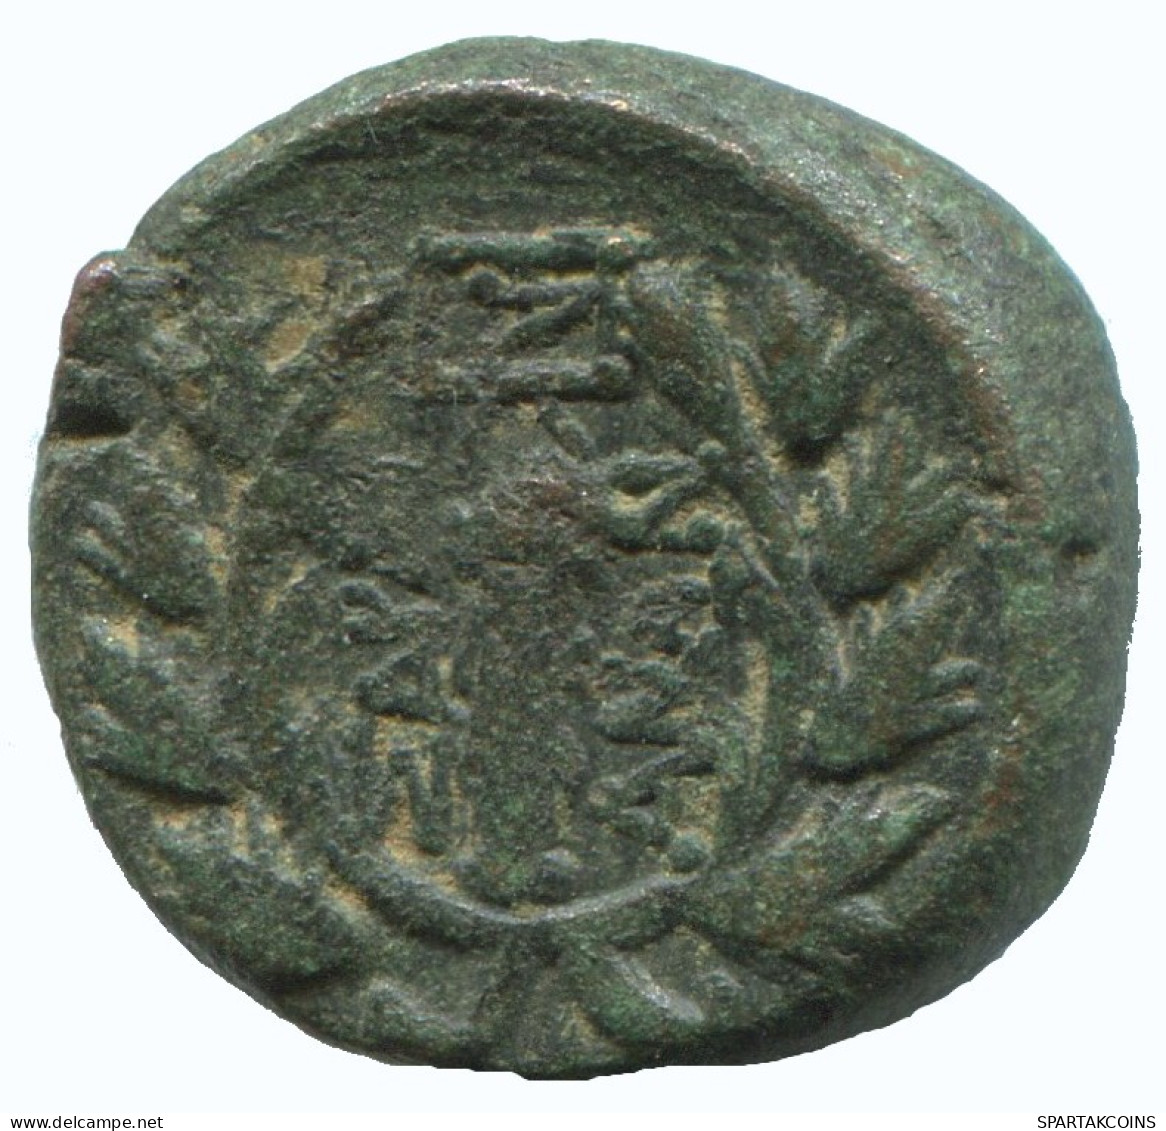 WREATH Antike Authentische Original GRIECHISCHE Münze 4.1g/16mm #NNN1422.9.D.A - Griechische Münzen